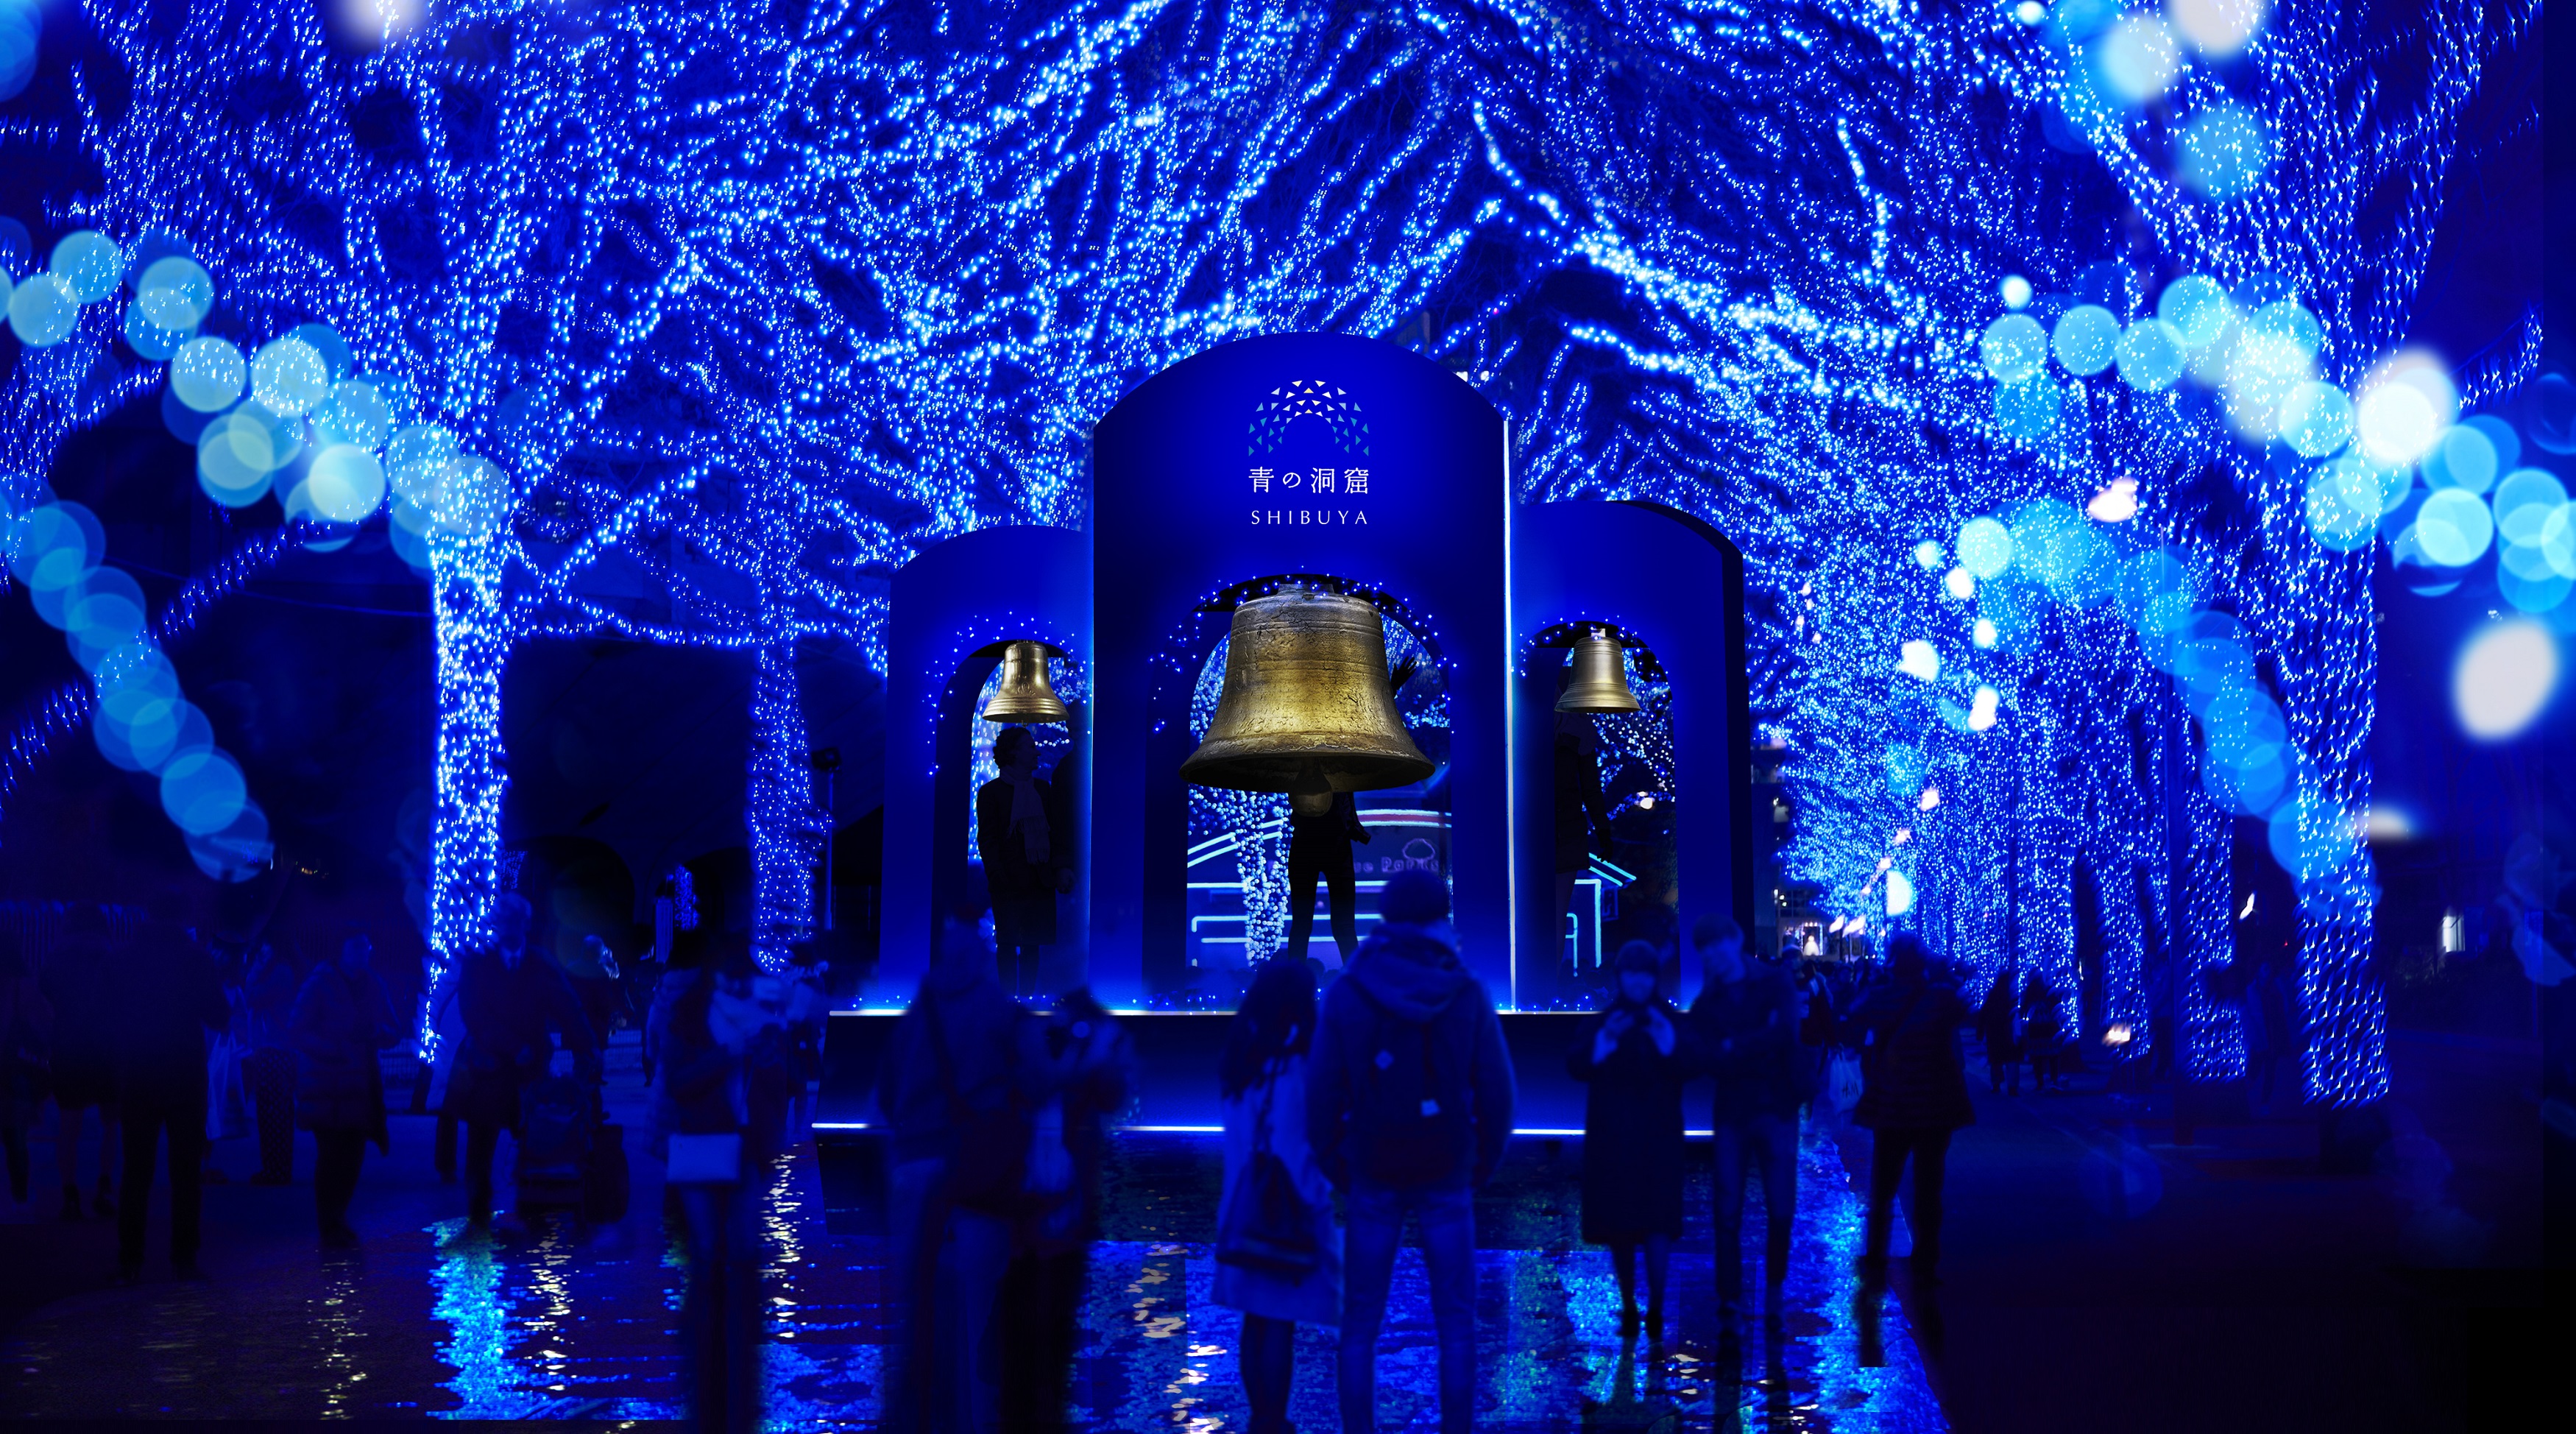 今年の 青の洞窟 には体験型アトラクションが初登場 青の洞窟 Shibuya 11月29日 金 点灯開始 日清フーズ株式会社のプレスリリース